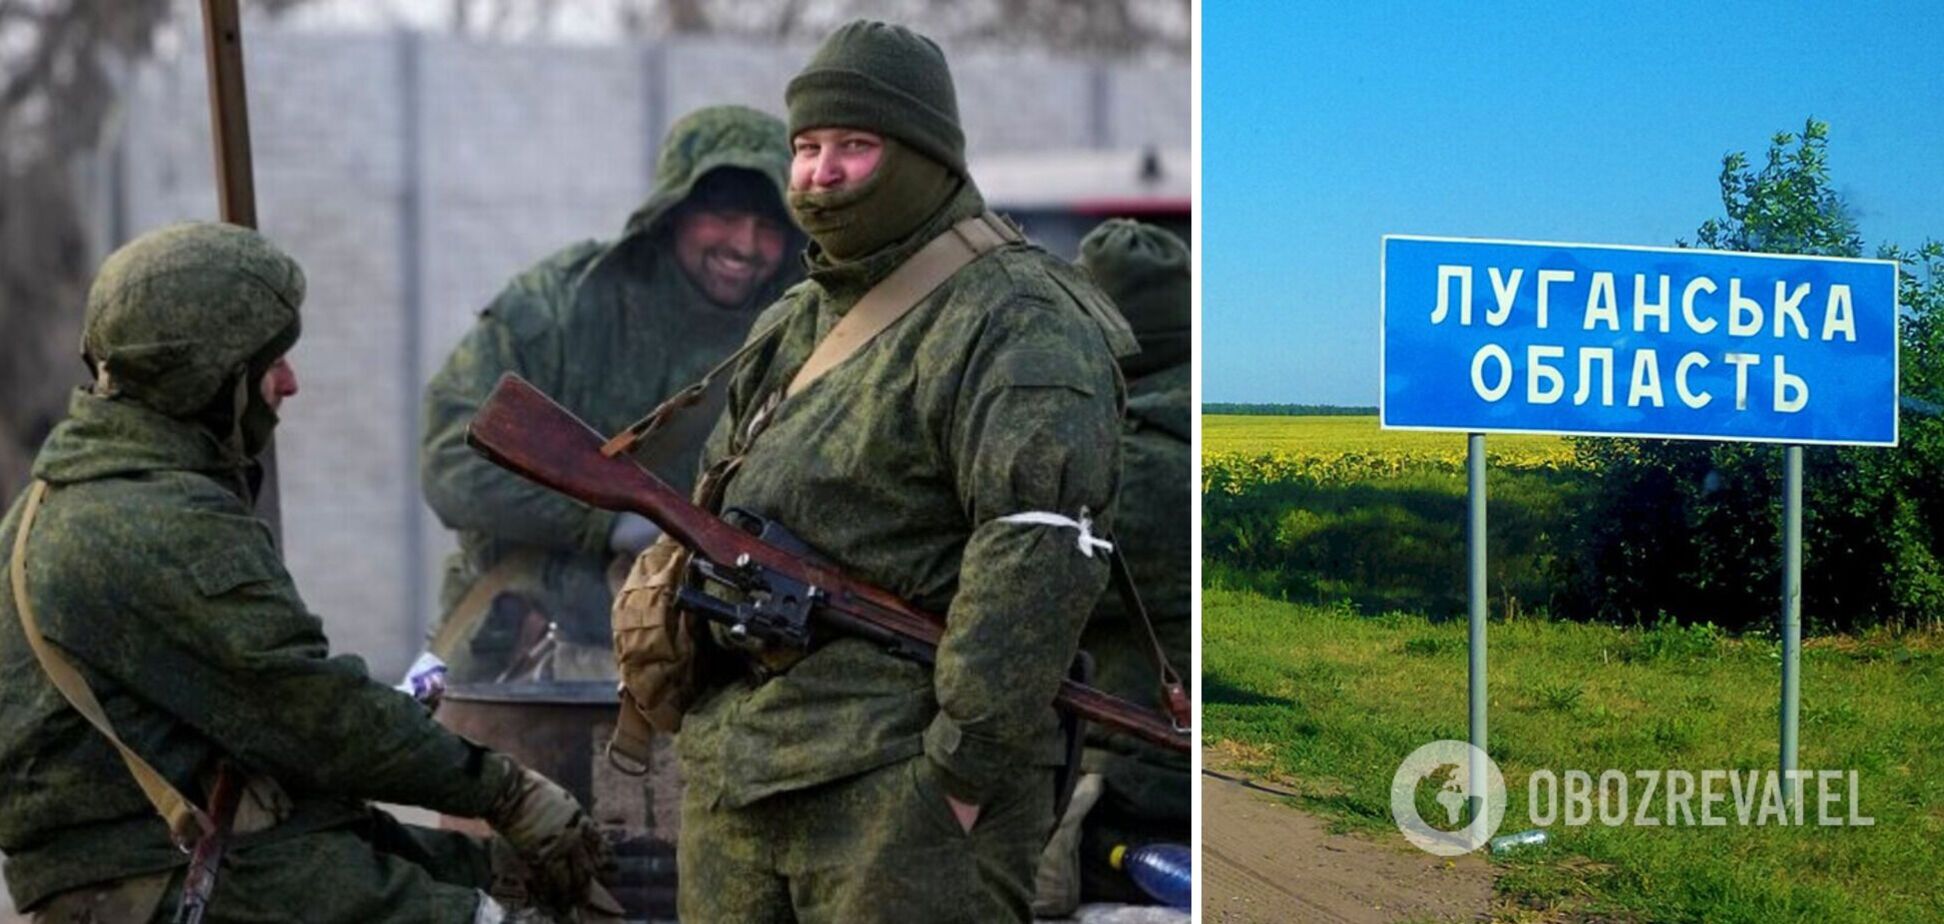 Оккупанты задумали на Луганщине новою волну мобилизации: ловят людей на захваченных предприятиях